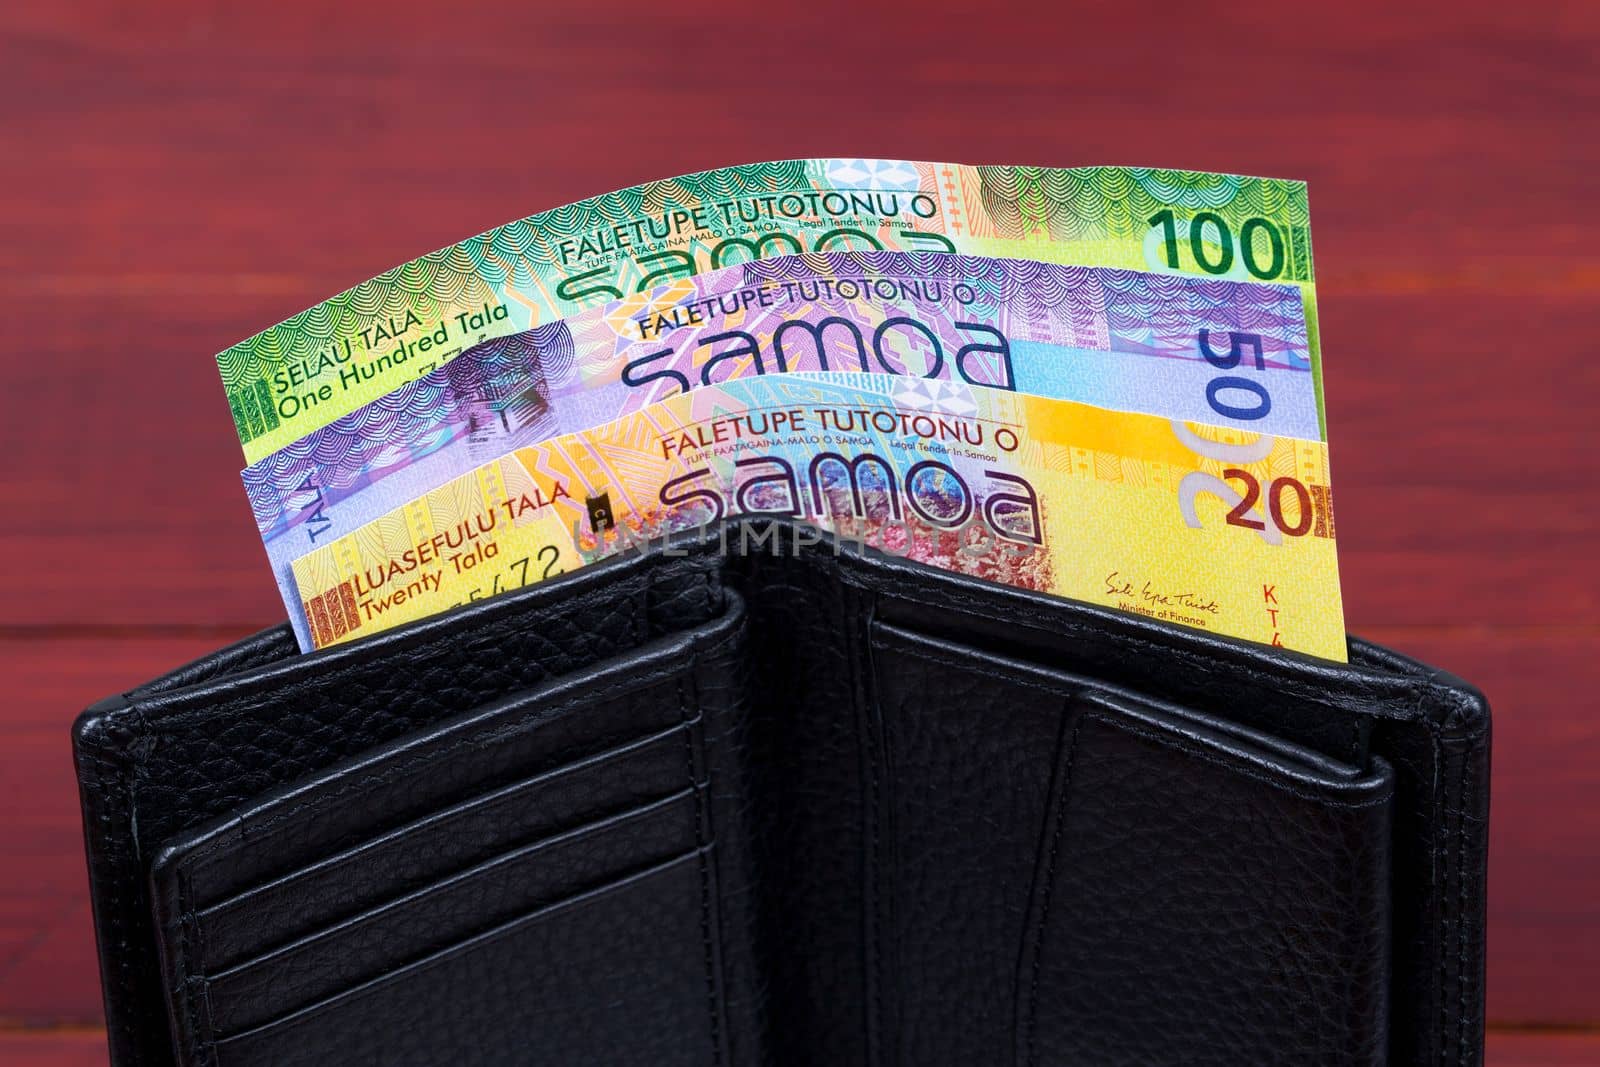 Samoan money - tala in the black wallet